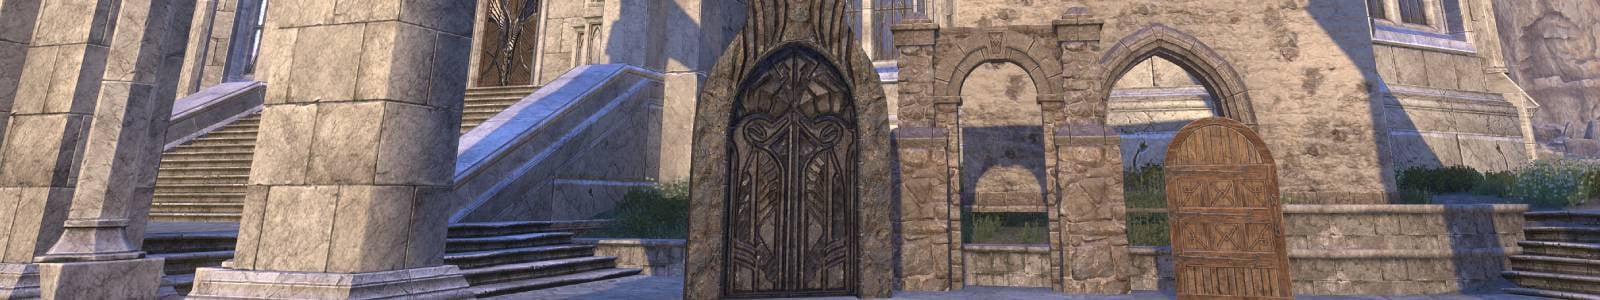 Clockwork Door, Arched - ESO header